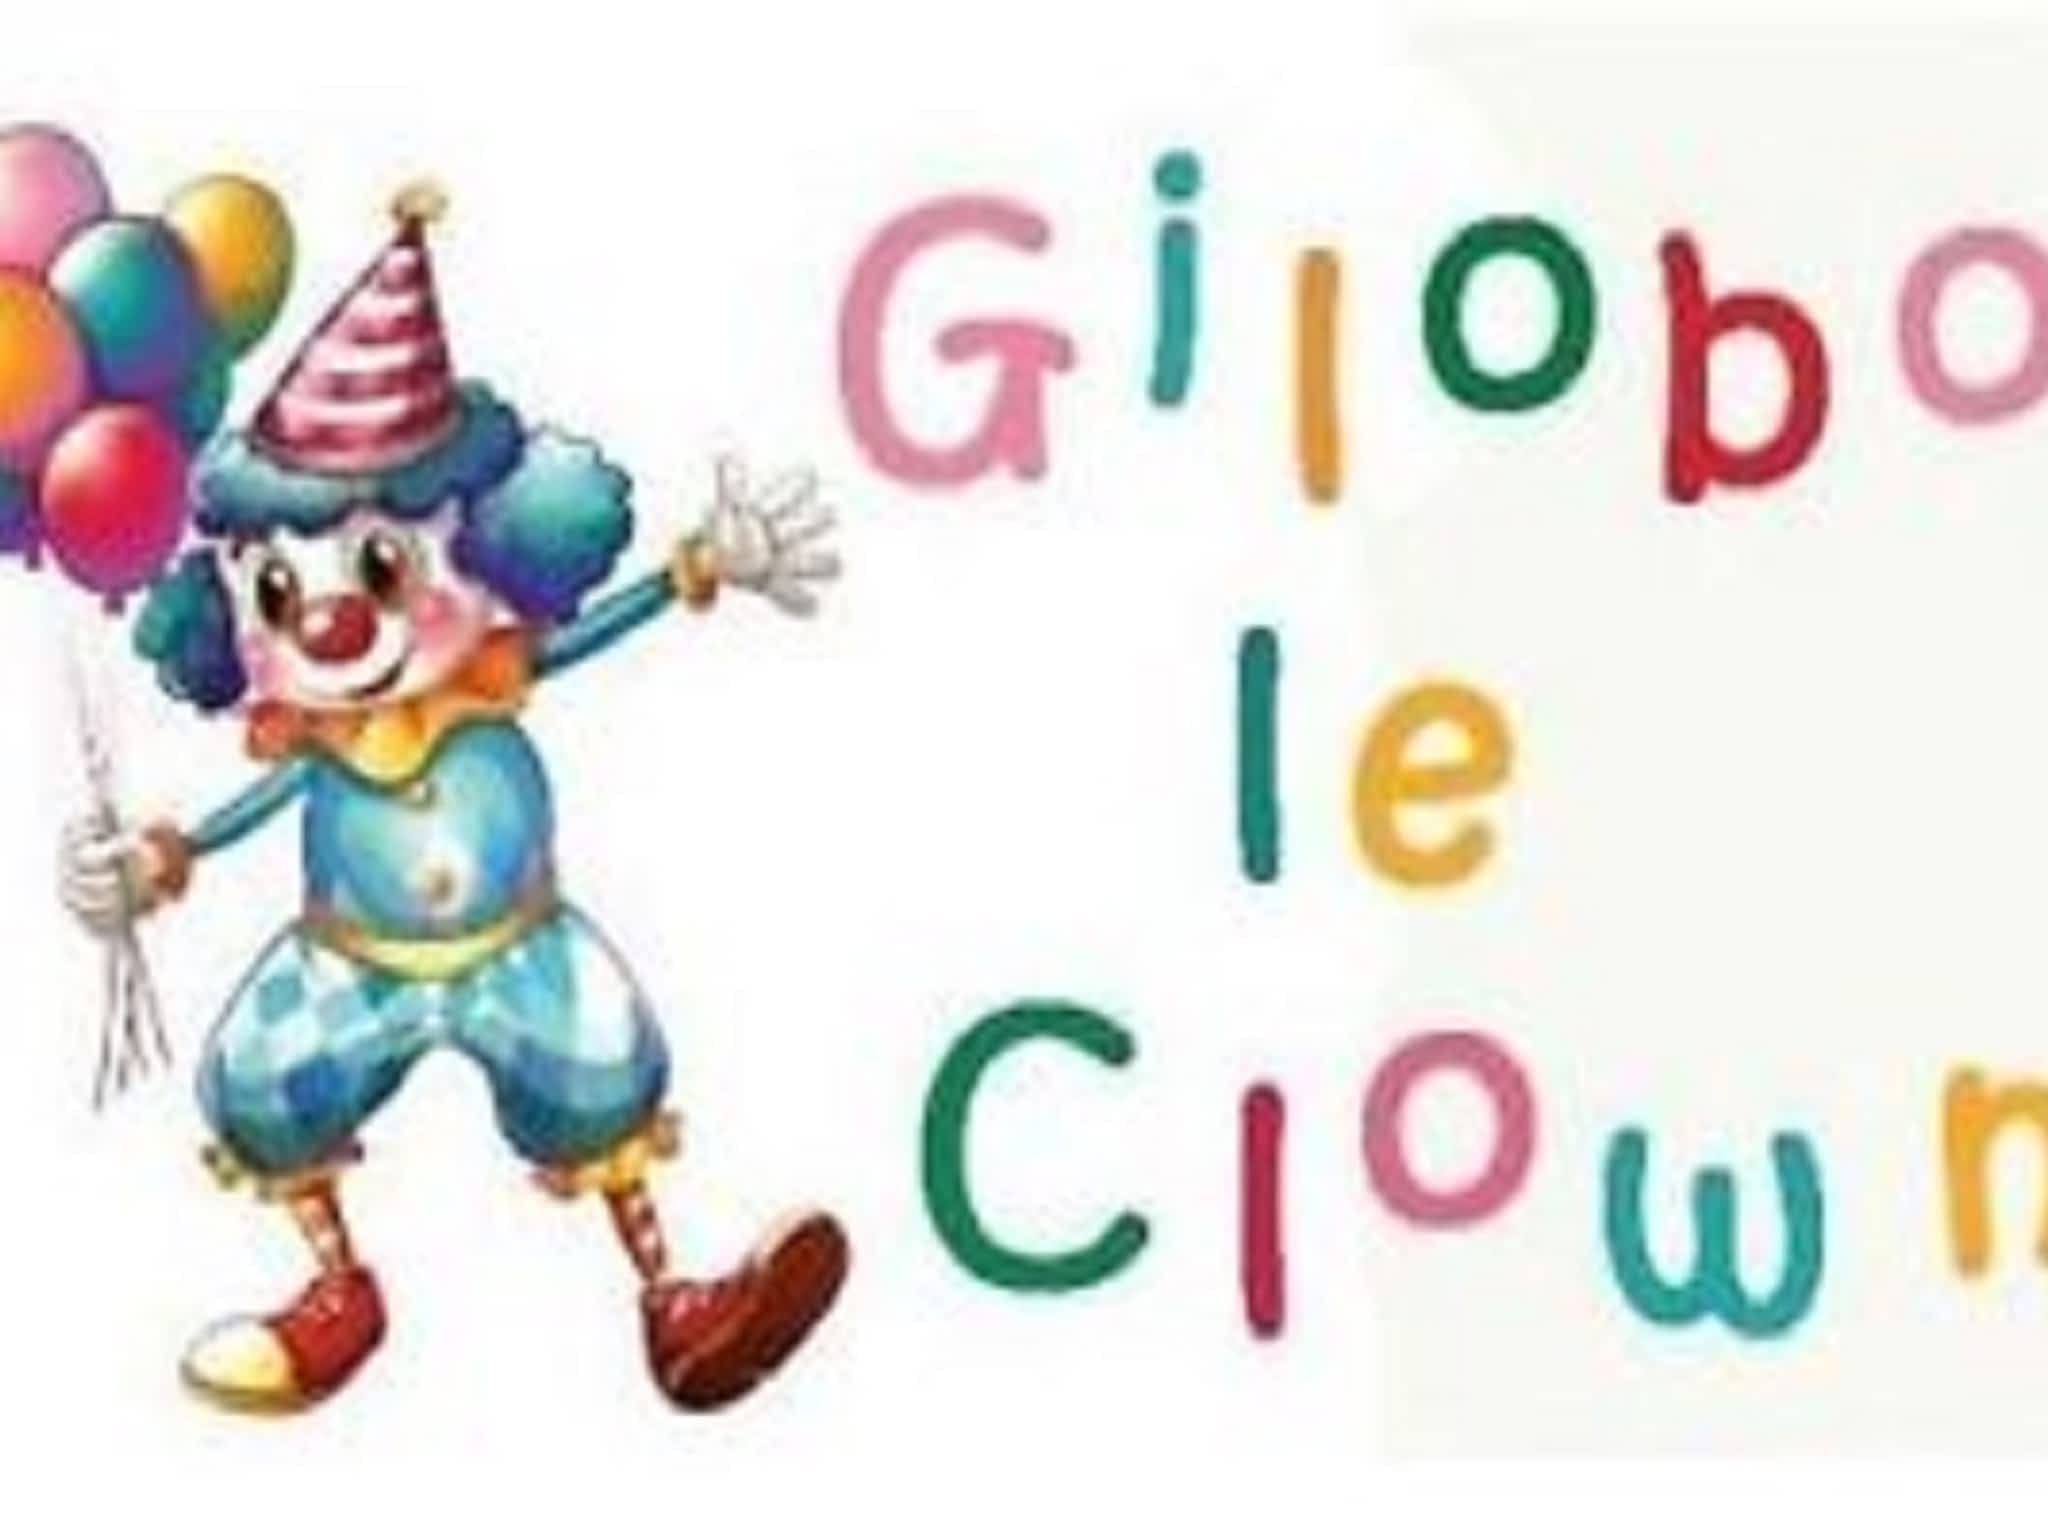 photo Gilobo Le Clown